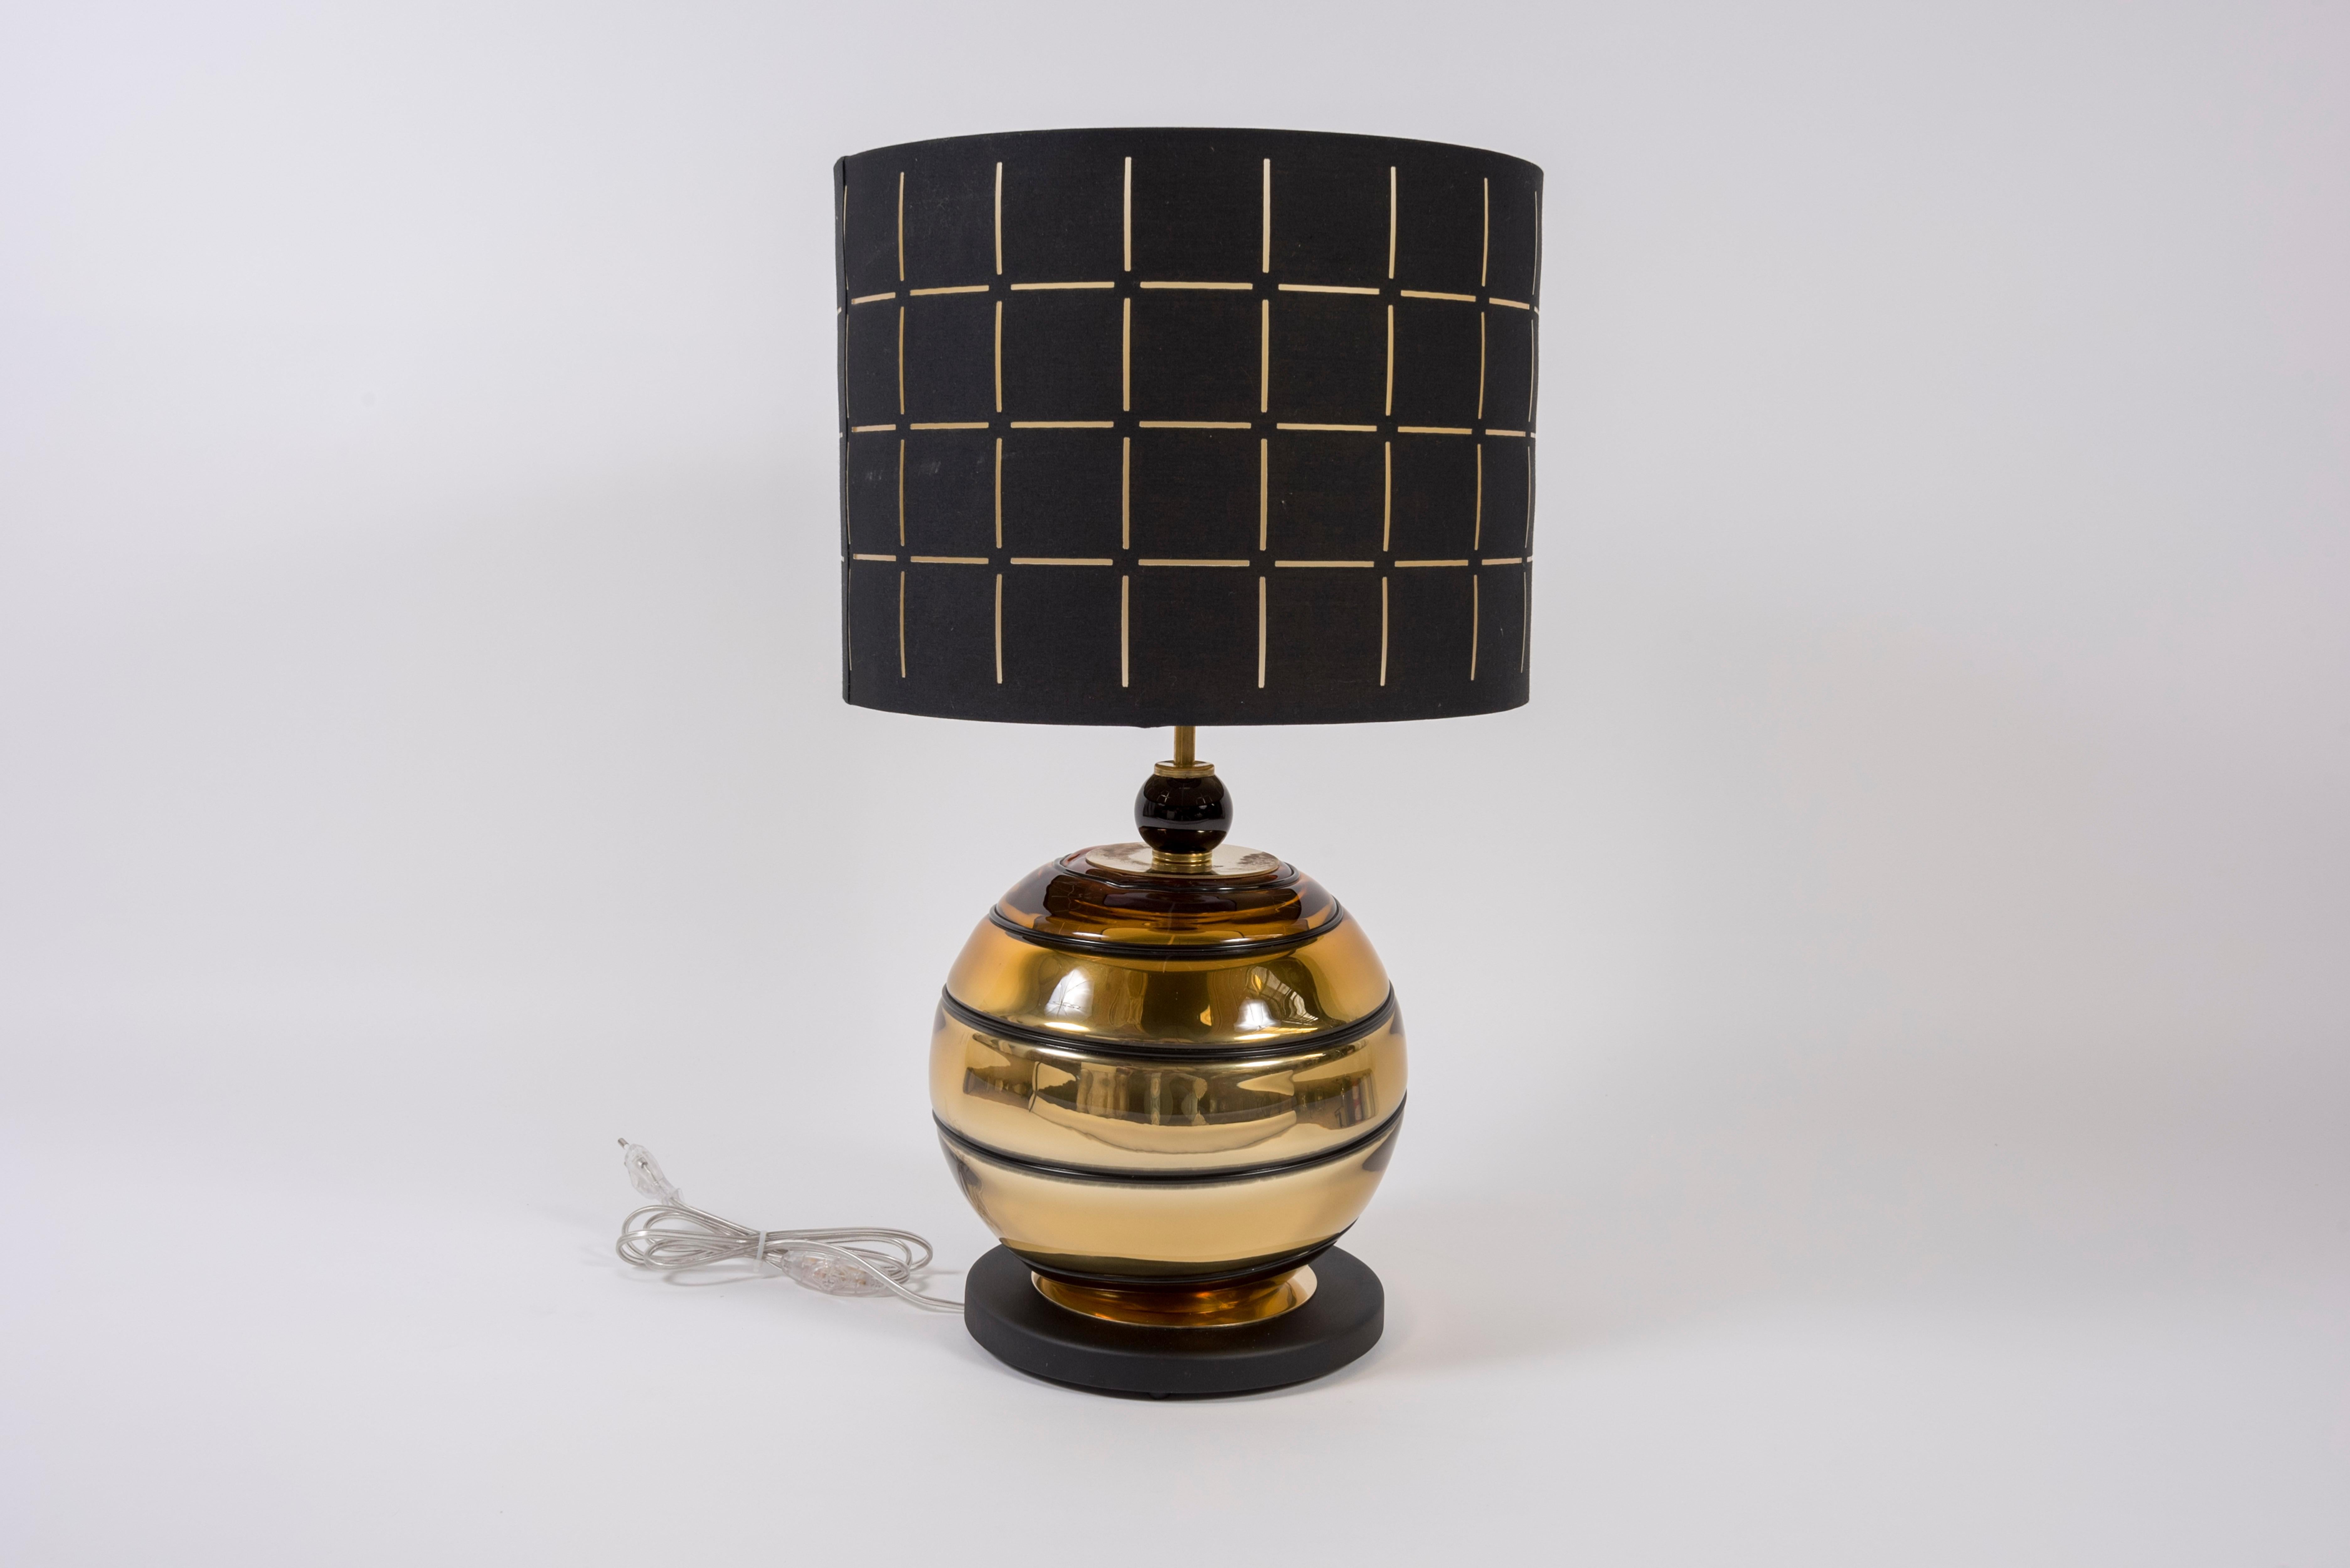 Paar Lampen aus Muranoglas
Italien
Kein Schatten enthalten
Die Abmessungen sind ohne Schatten angegeben.